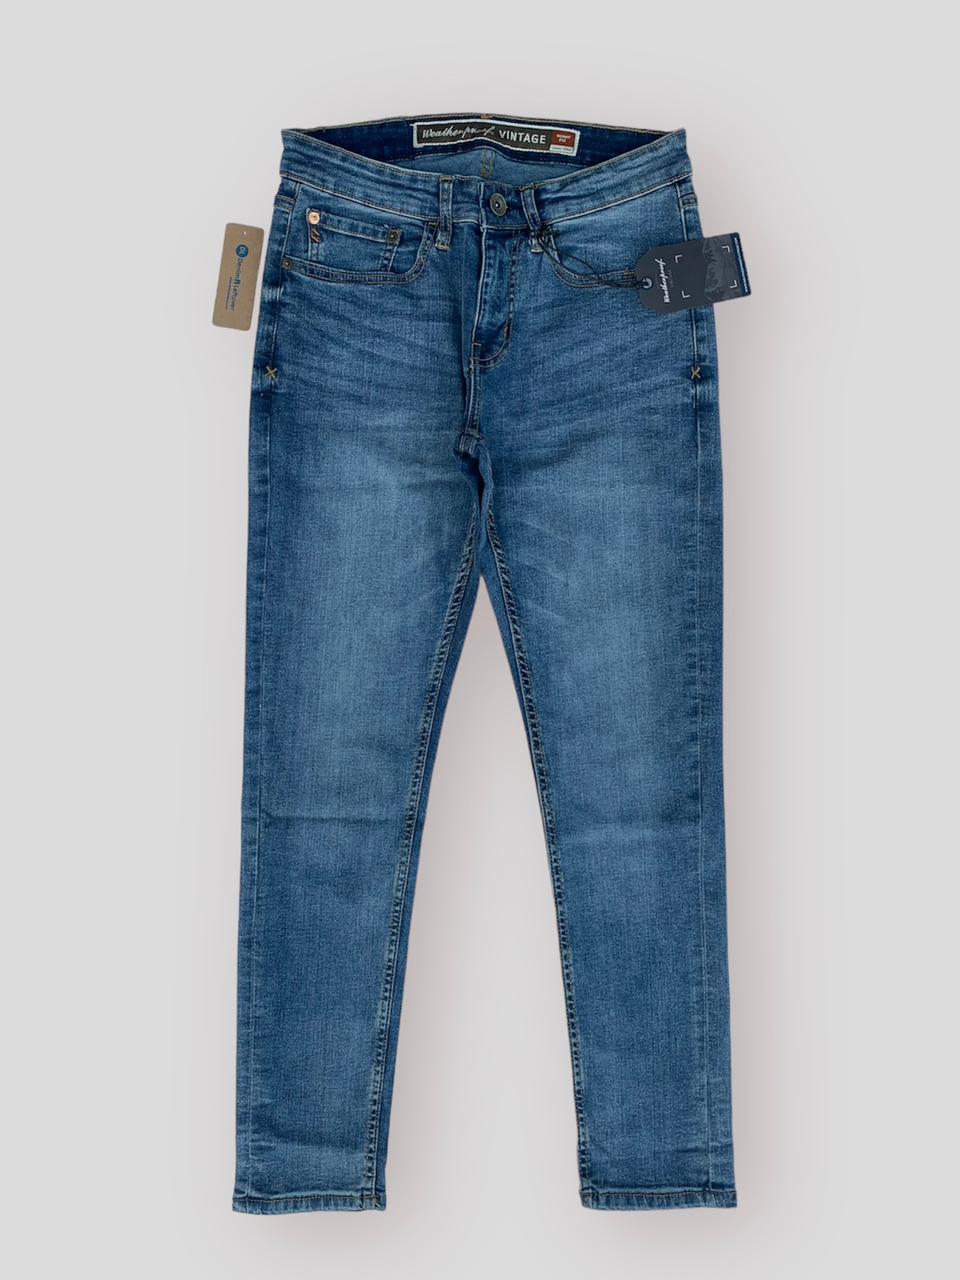 Men Skinny Fit Light Blue Jeans DL4253